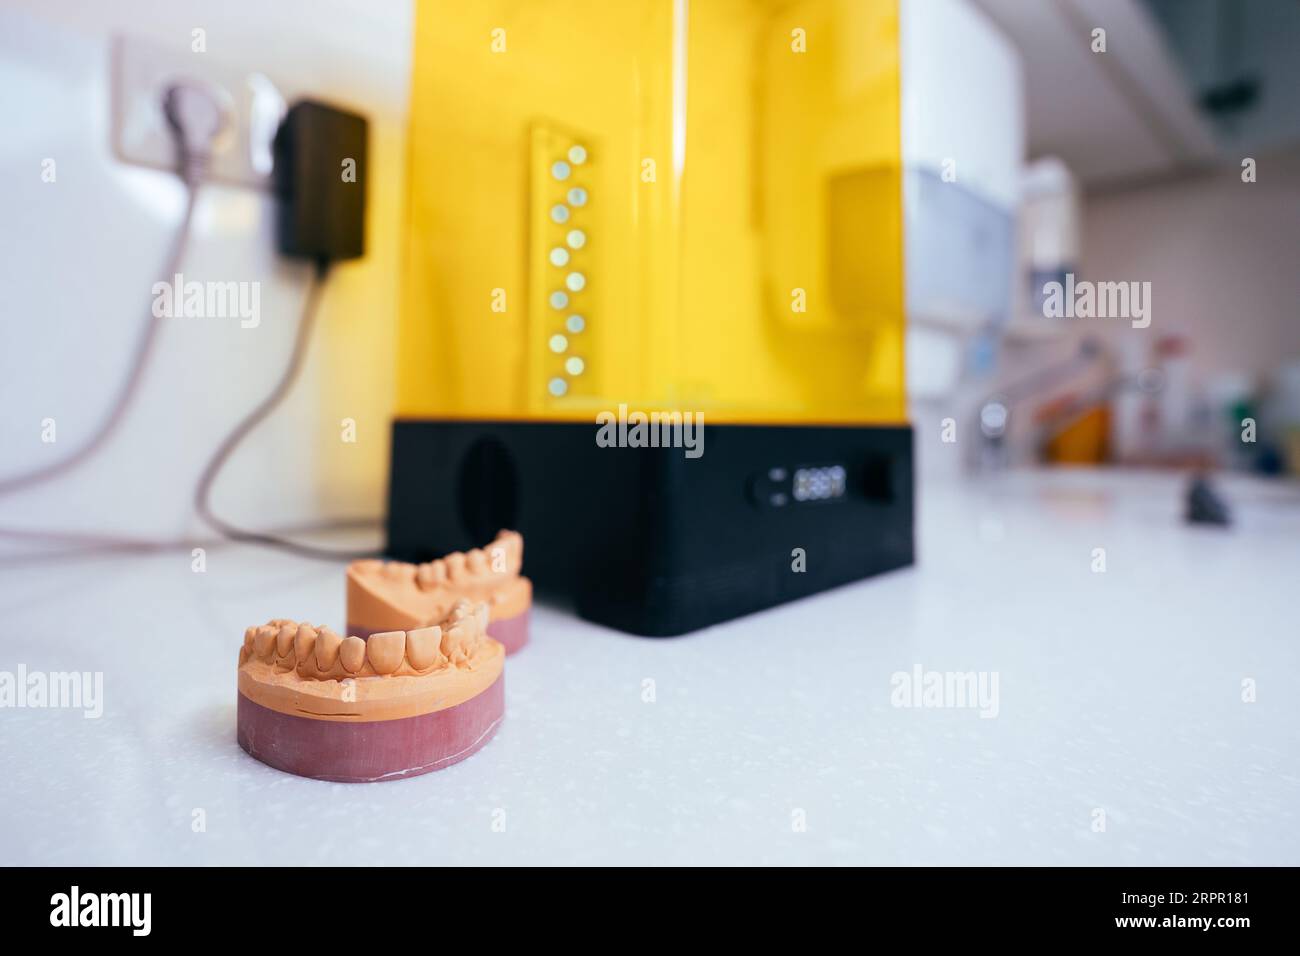 Gerät zum Waschen eines dentalen 3D-Drucks in einer Reinigungslösung und zum Aushärten der Form mit UV-Licht. Stockfoto